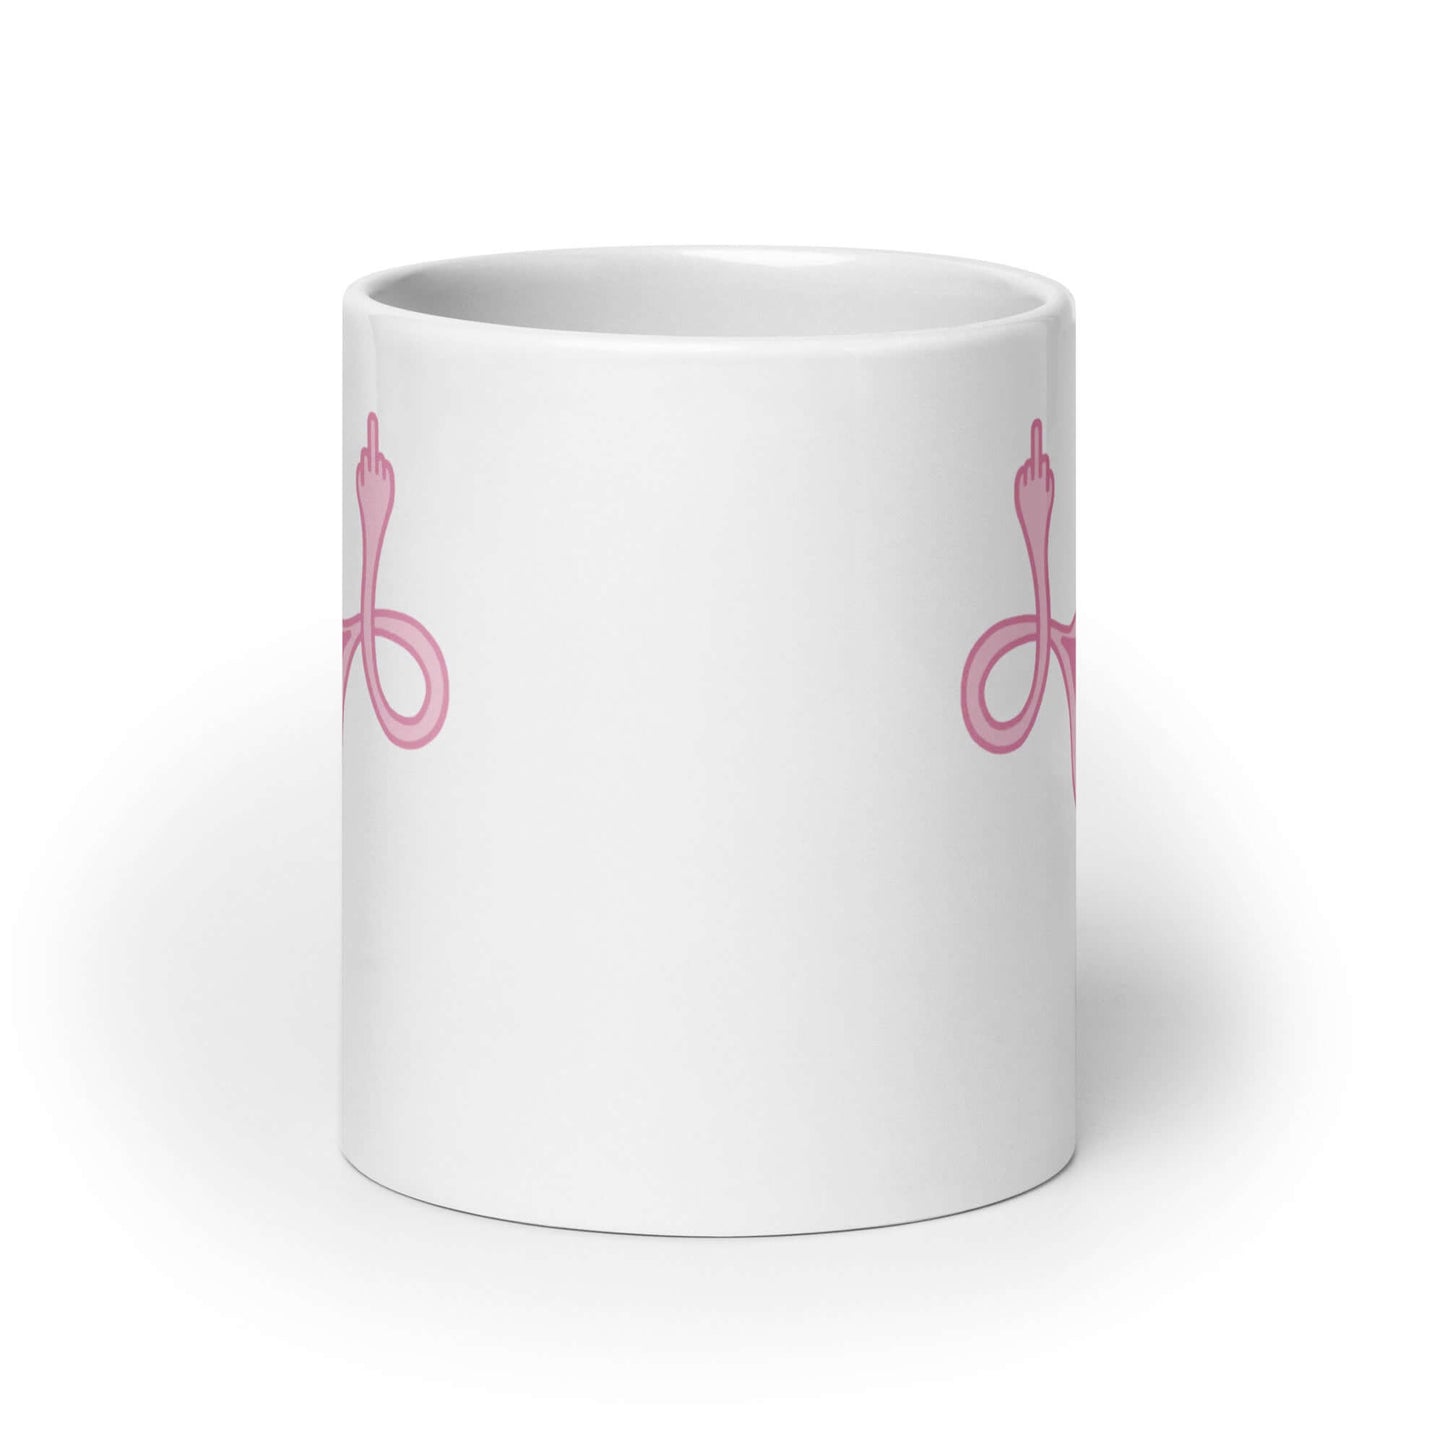 Angry uterus mug